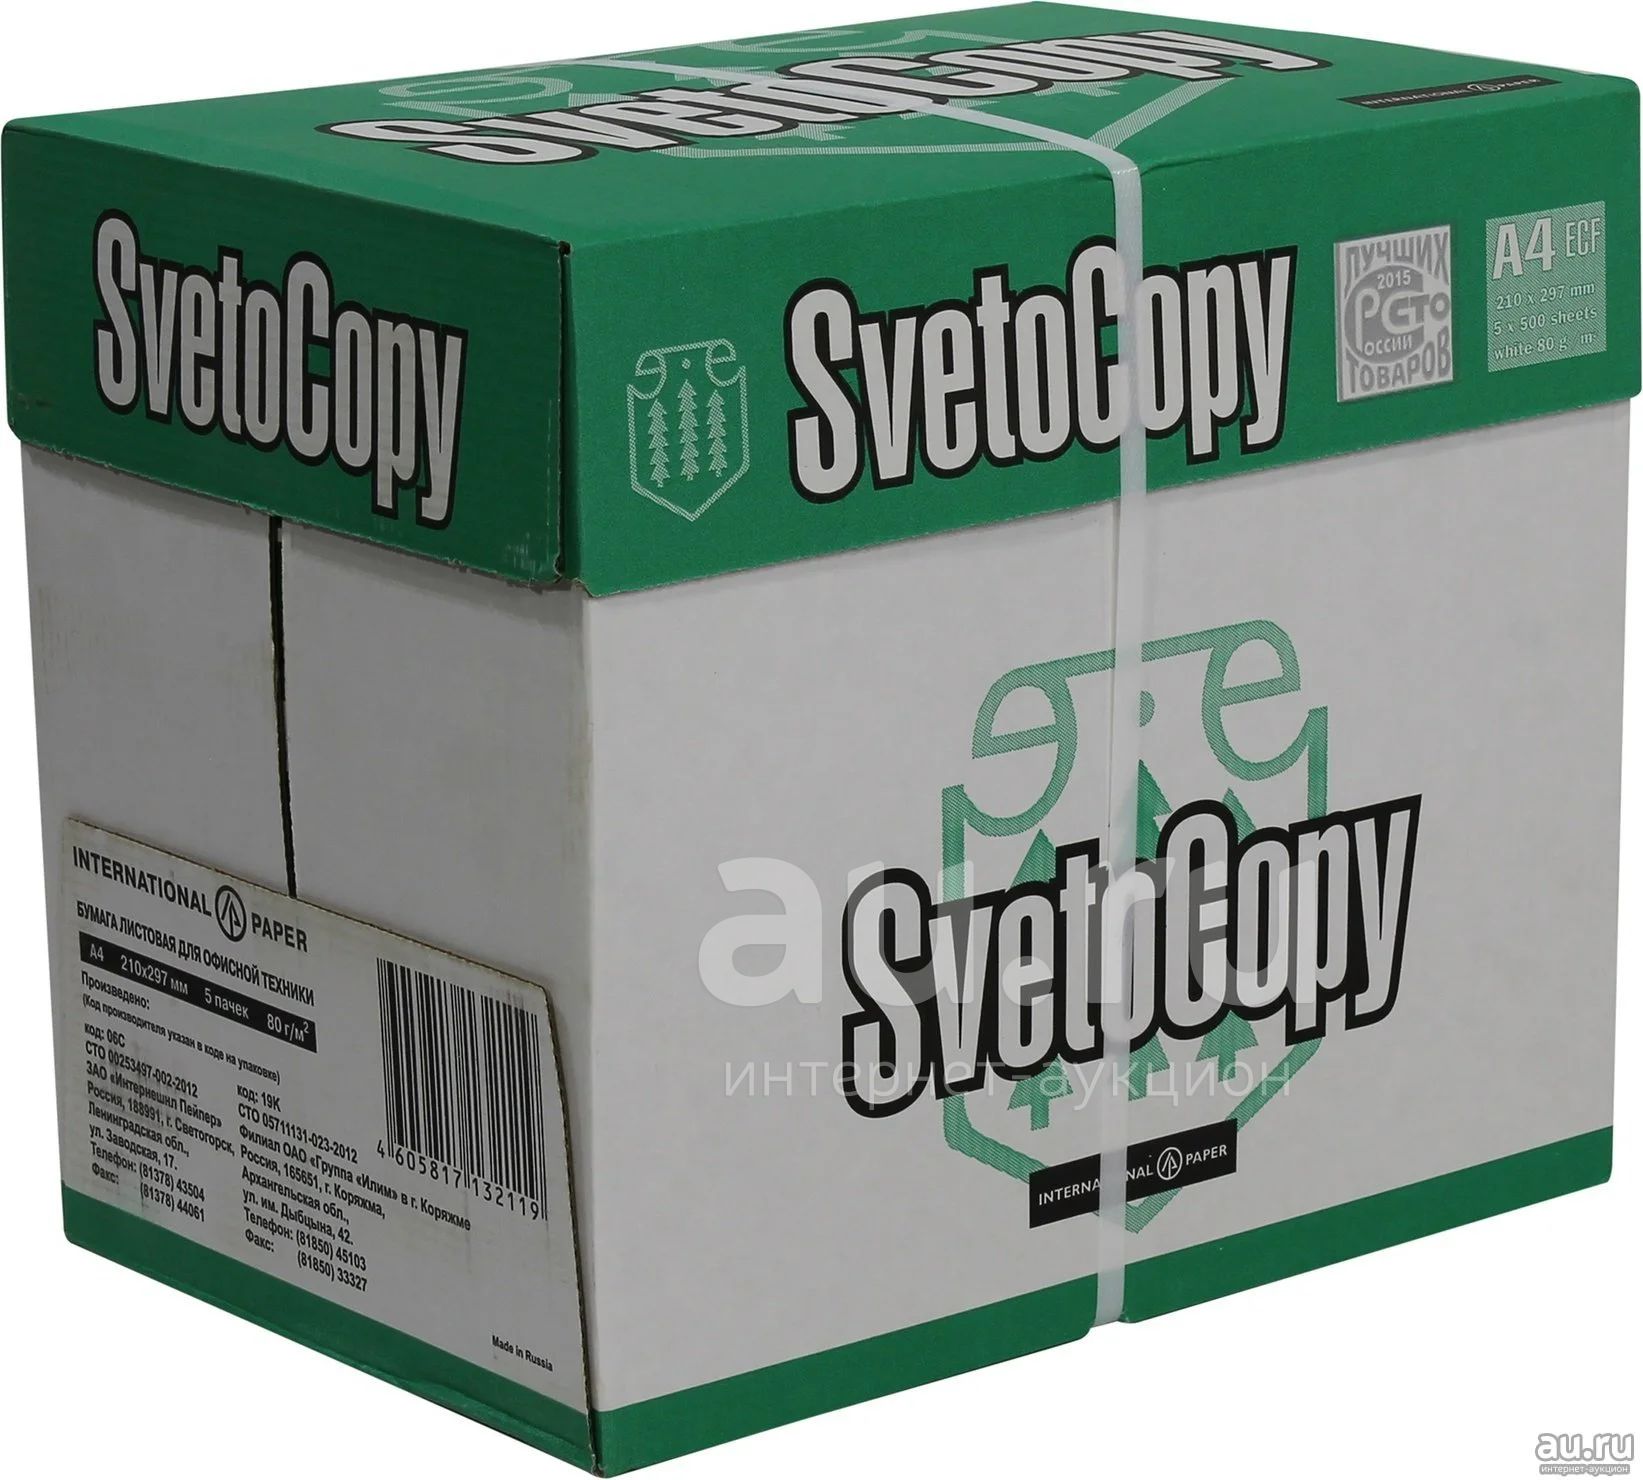 Сколько в коробке бумаги а4. Бумага a4 500 шт. Svetocopy Classic. Бумага svetocopy Premium а4. Бумага a4 500 шт. Svetocopy Premium. Svetocopy 4 пачки.